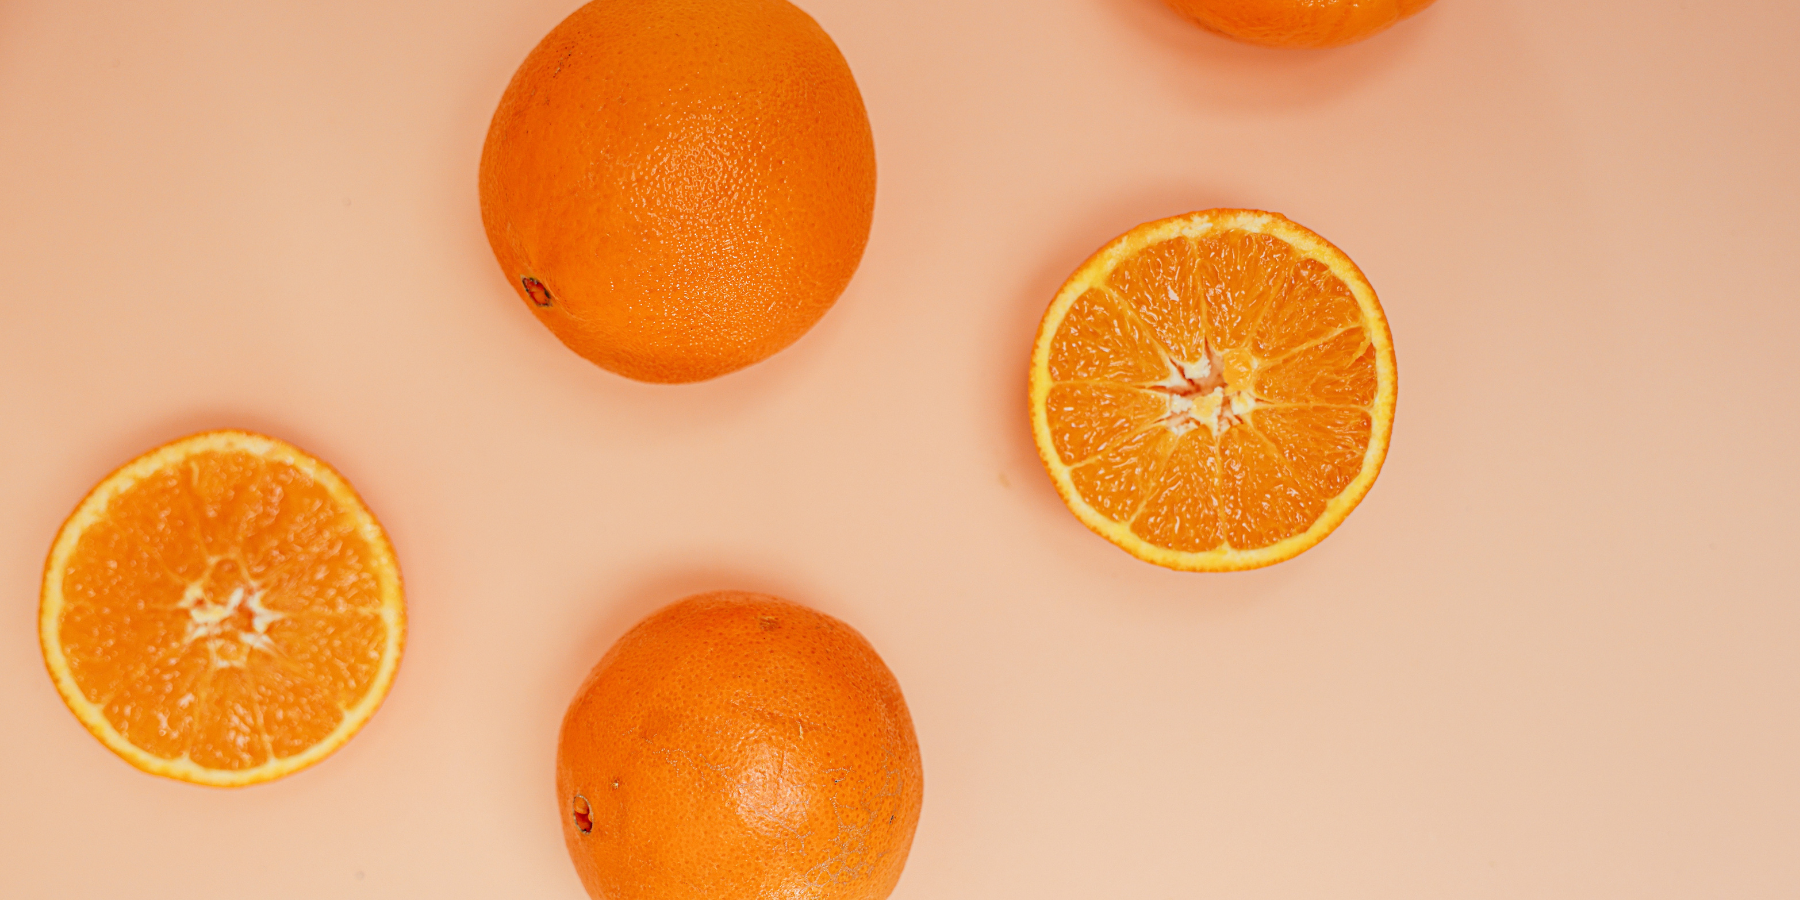 Skincare Benefits of Citrus Essential Oils